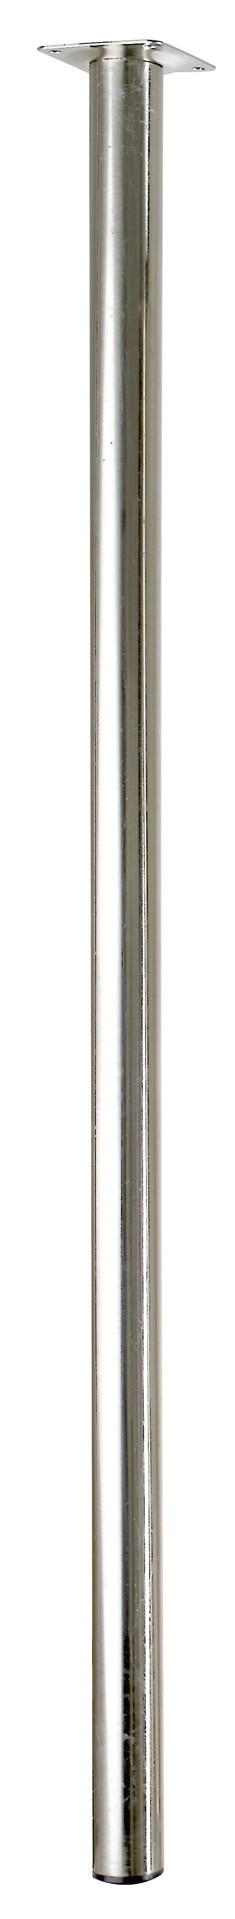 Pied de table cylindrique fixe acier brossé gris, 80 cm